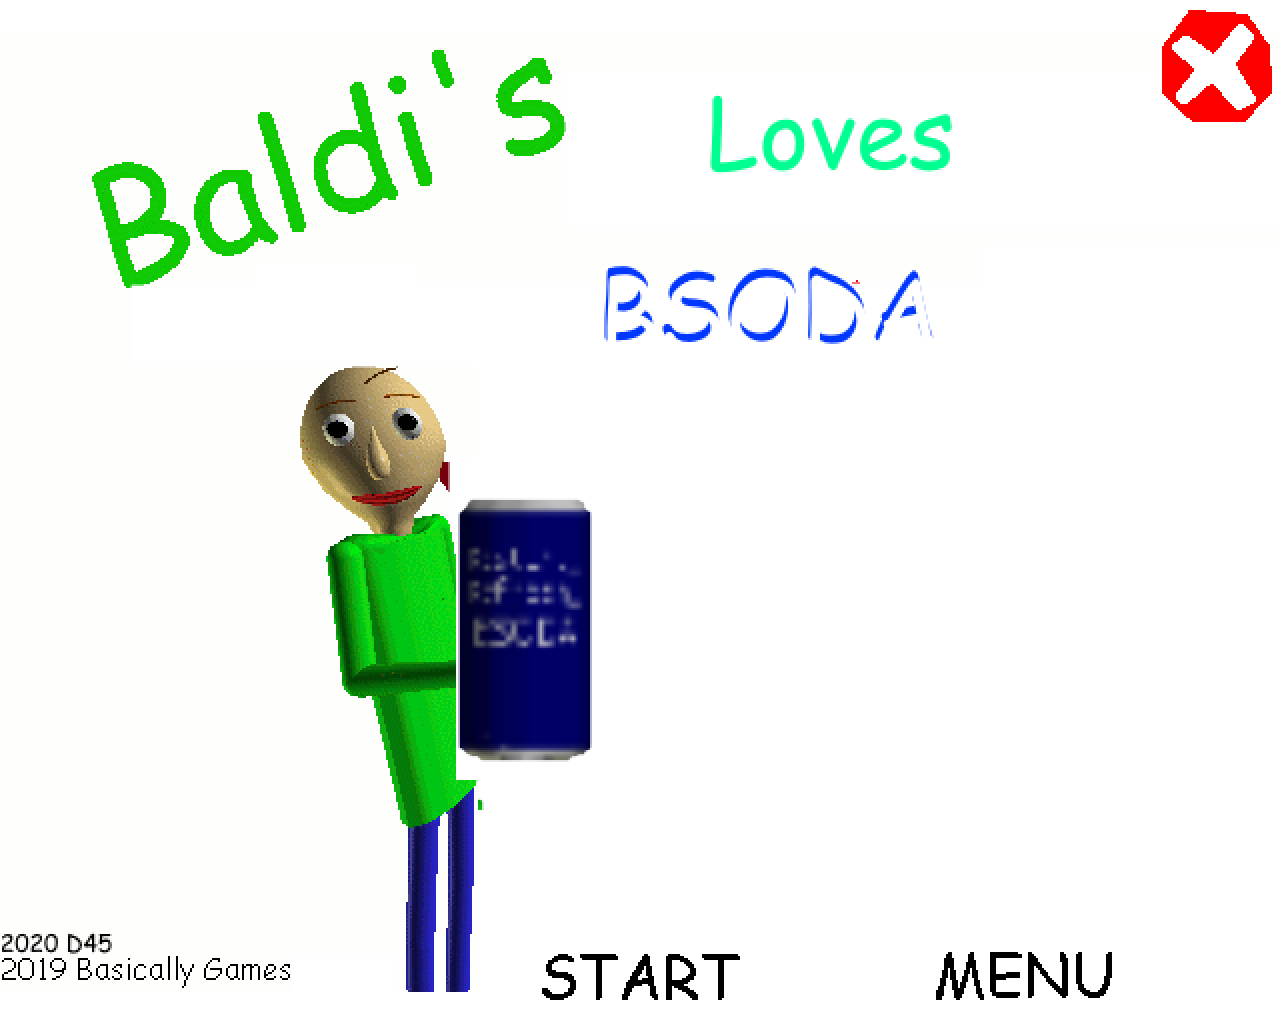 Baldi love